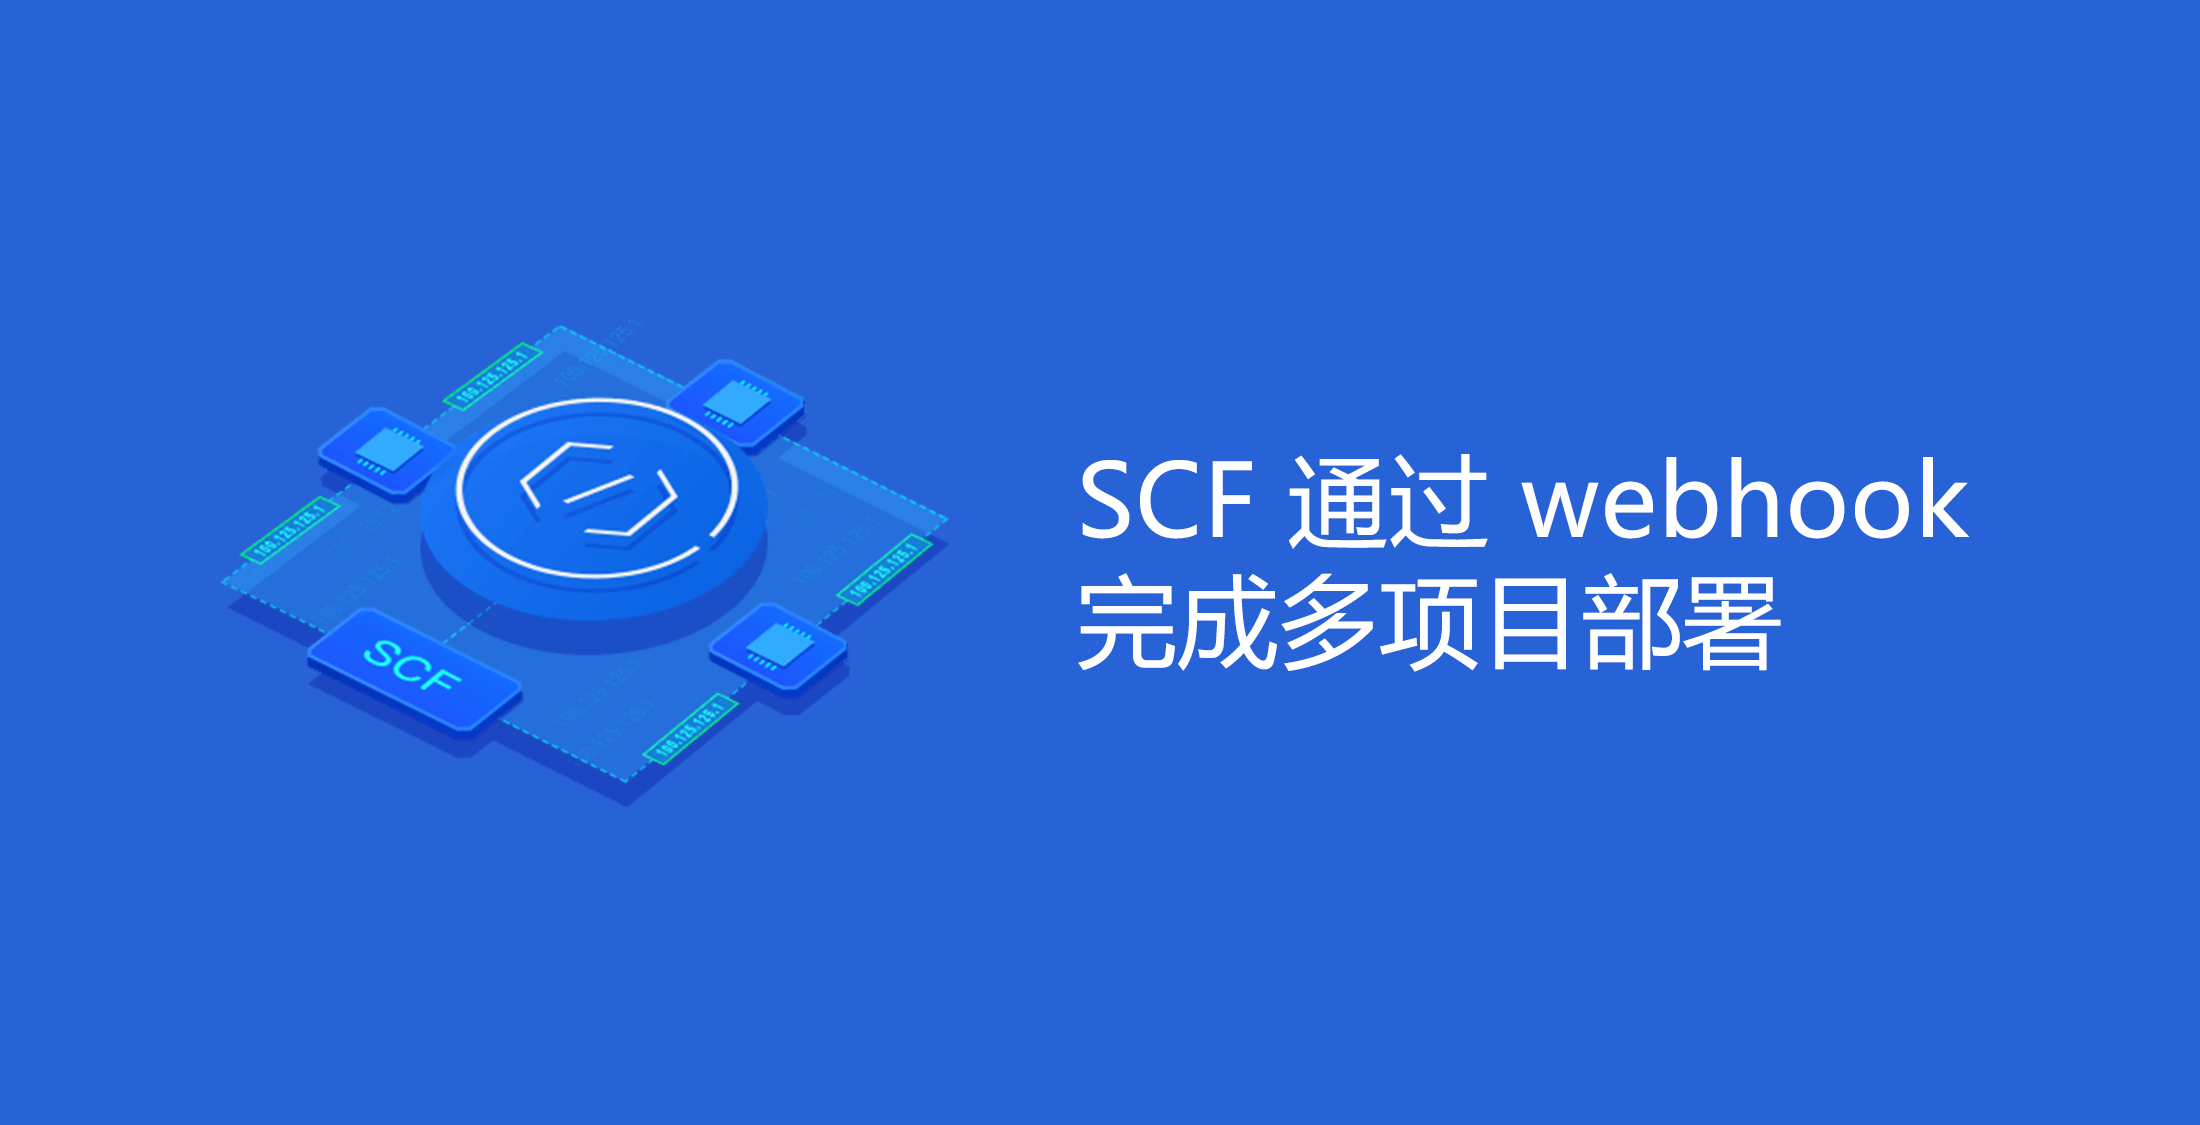 基于 SCF 通过 webhook 完成多项目部署